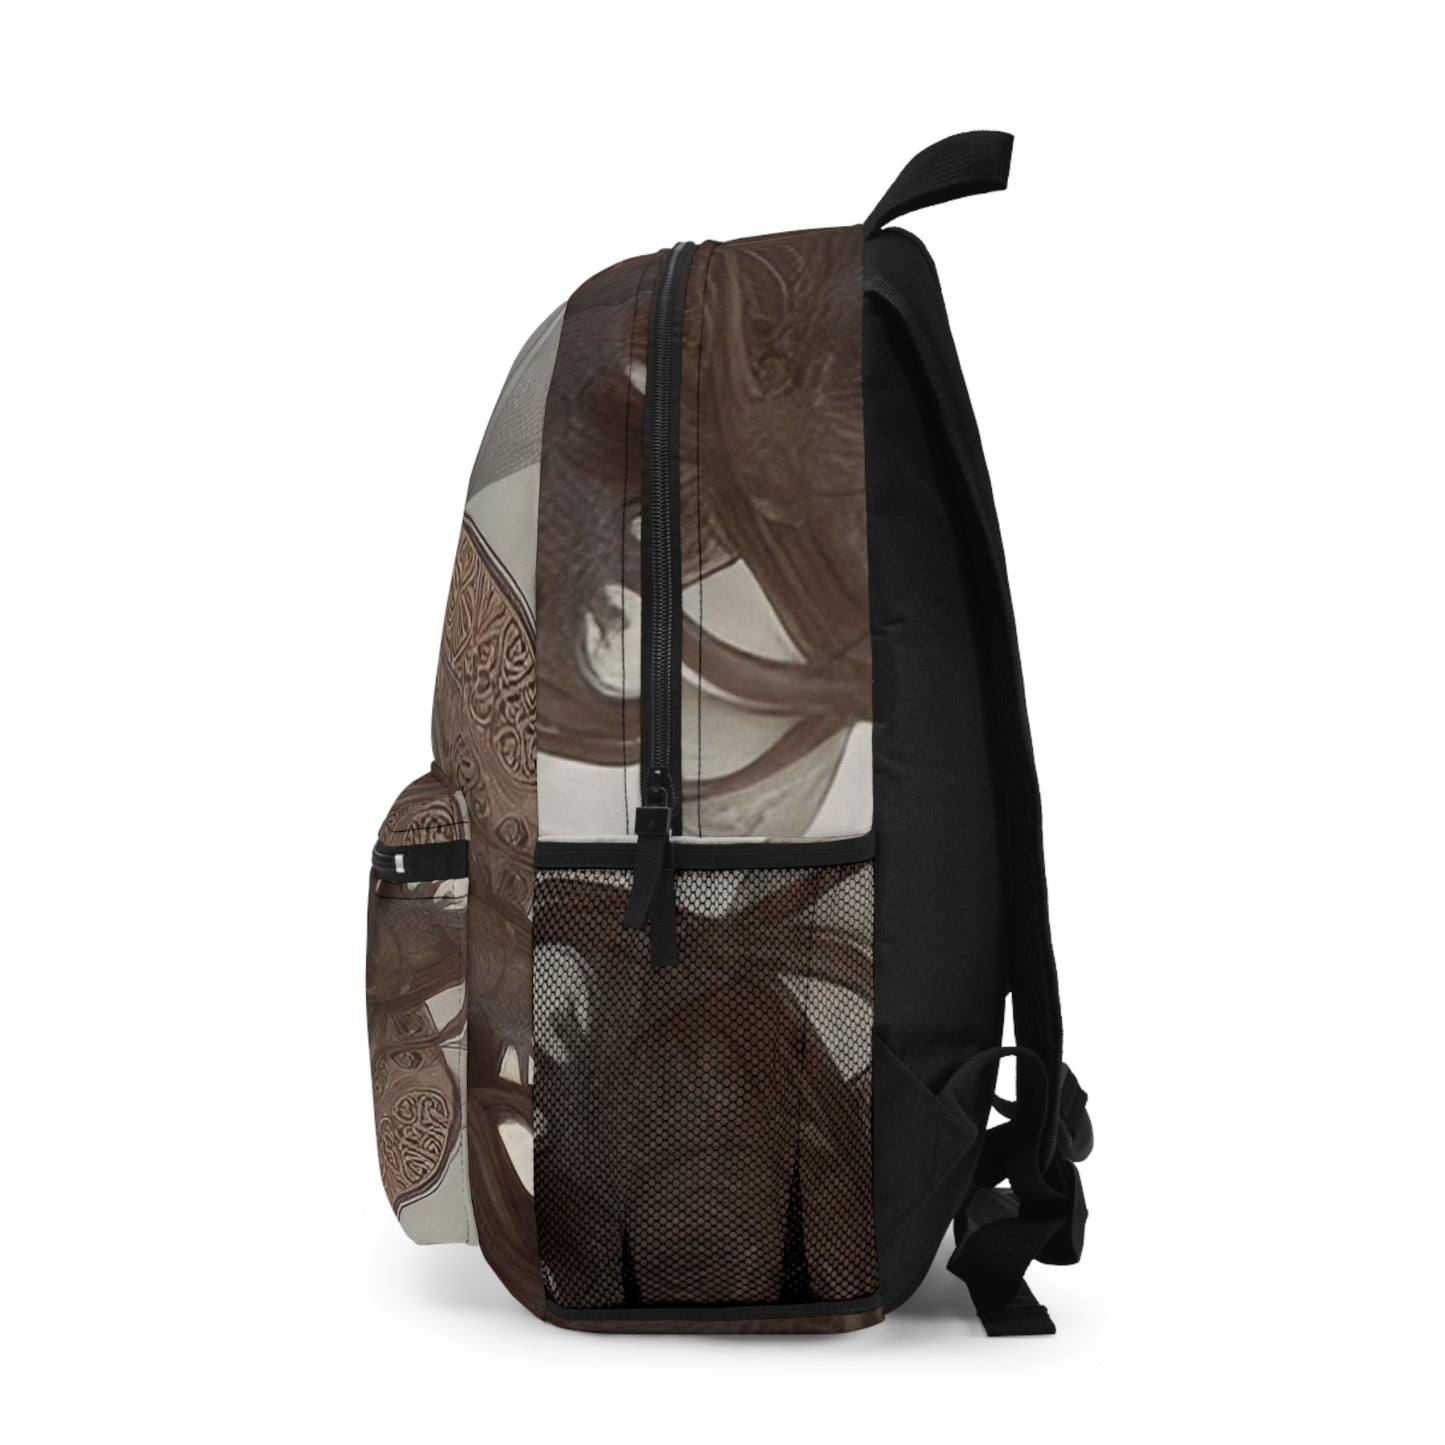 Adevan Shield Backpack